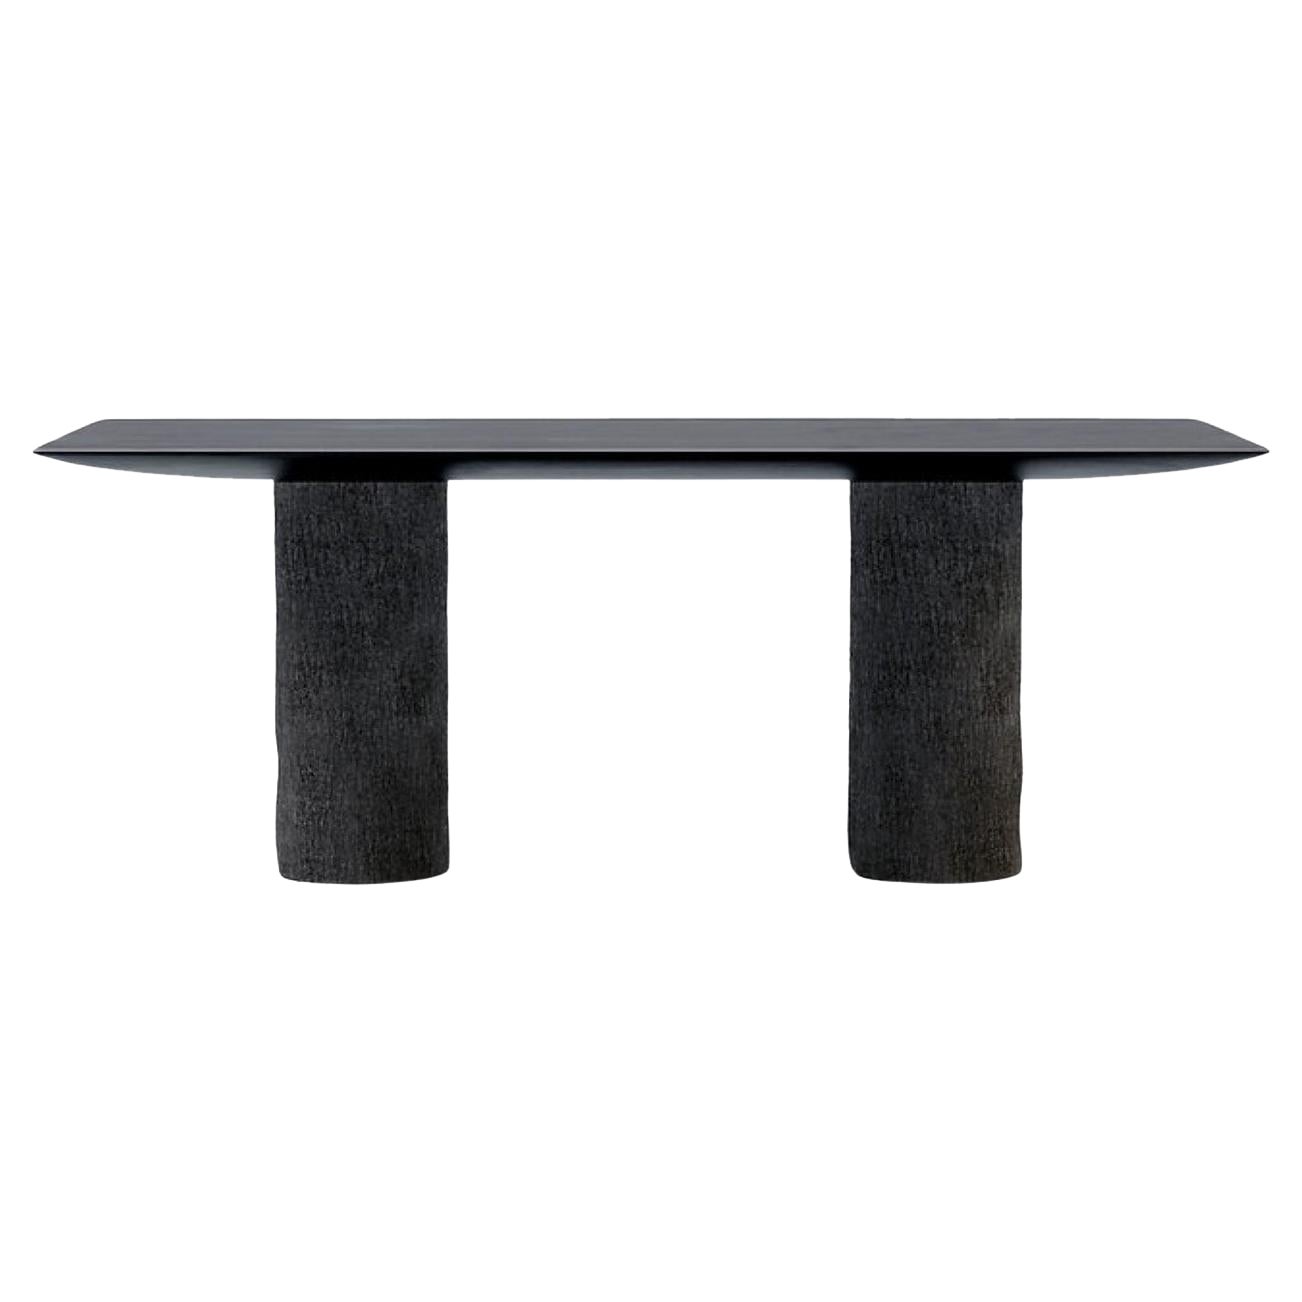 Veleten Table by Faina For Sale